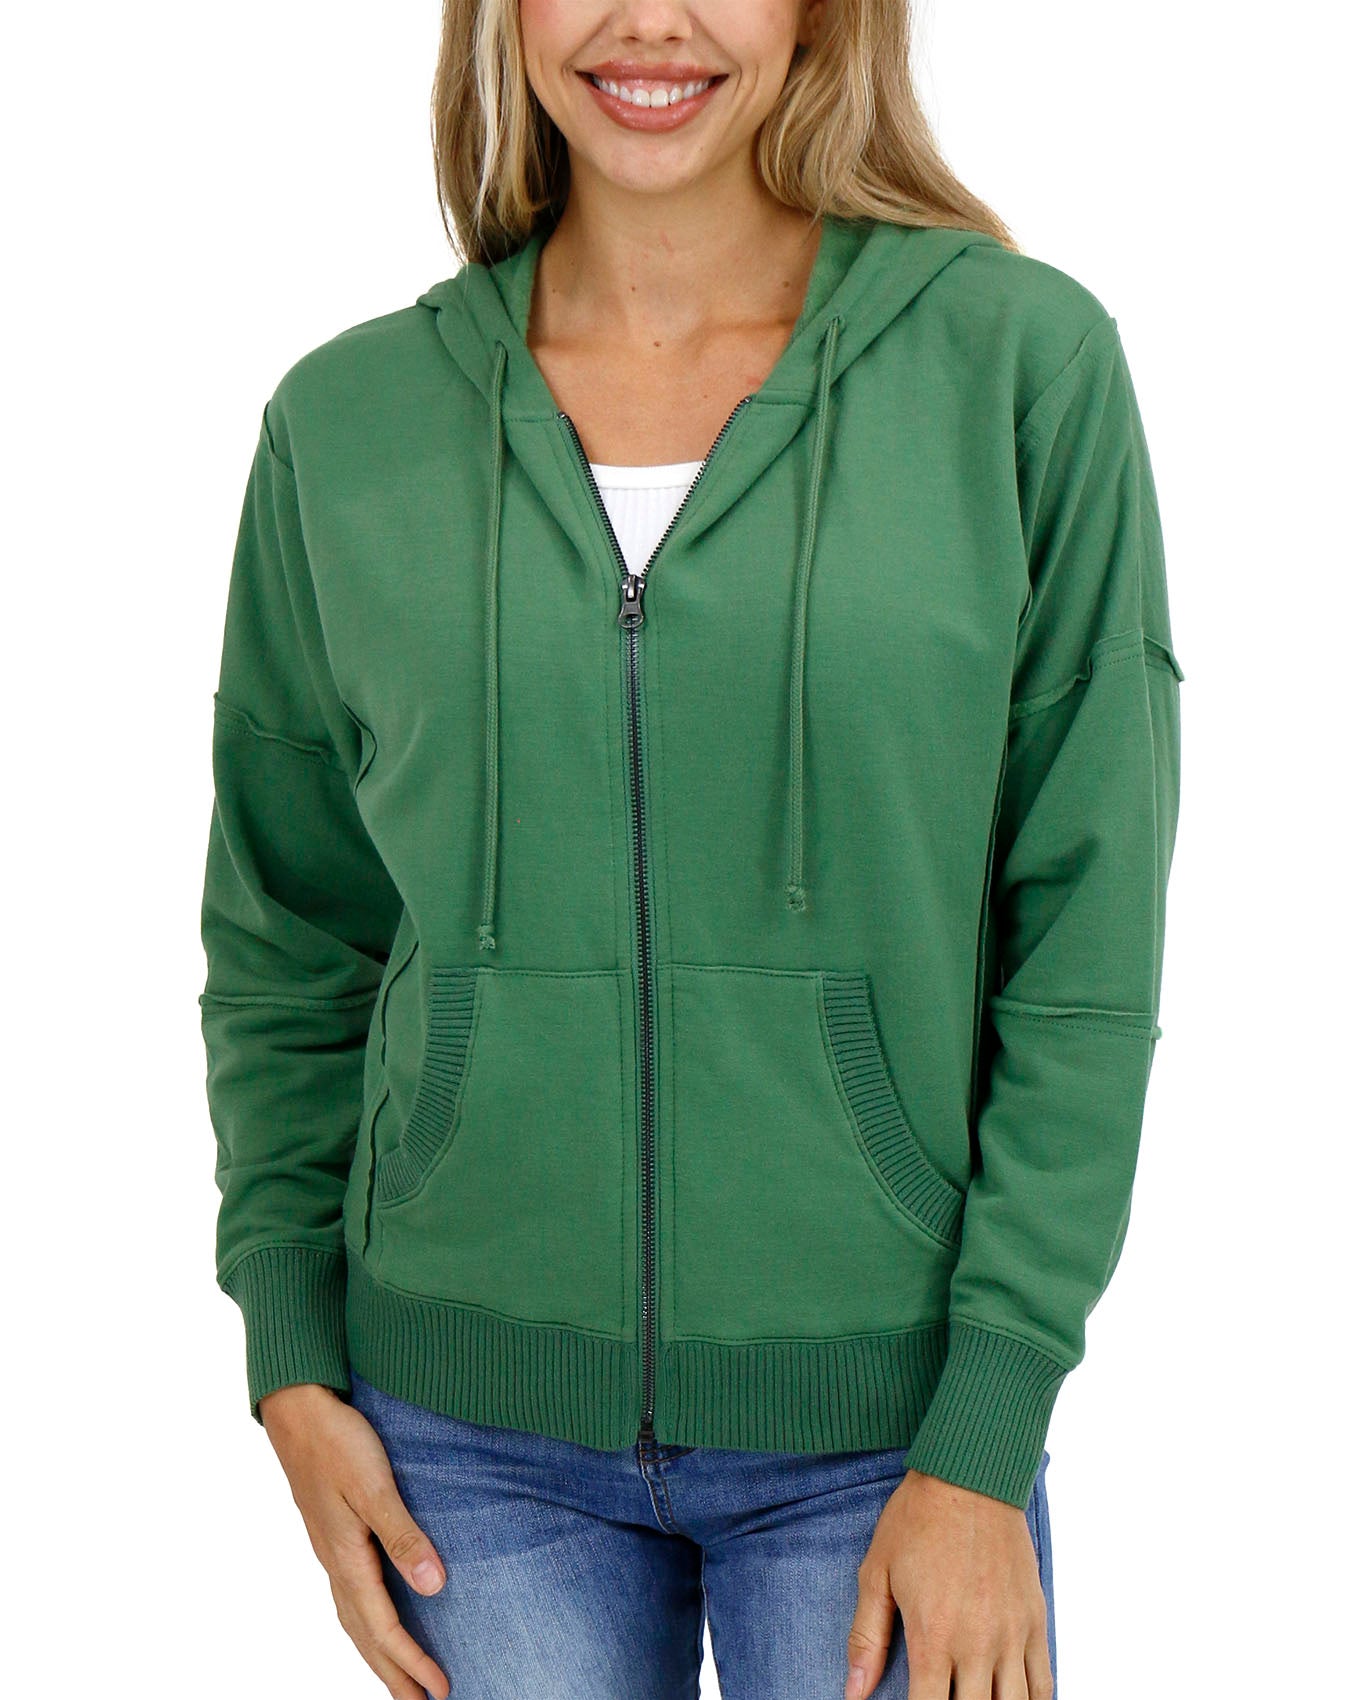 front view stock shot of hedge green zip up hoodie